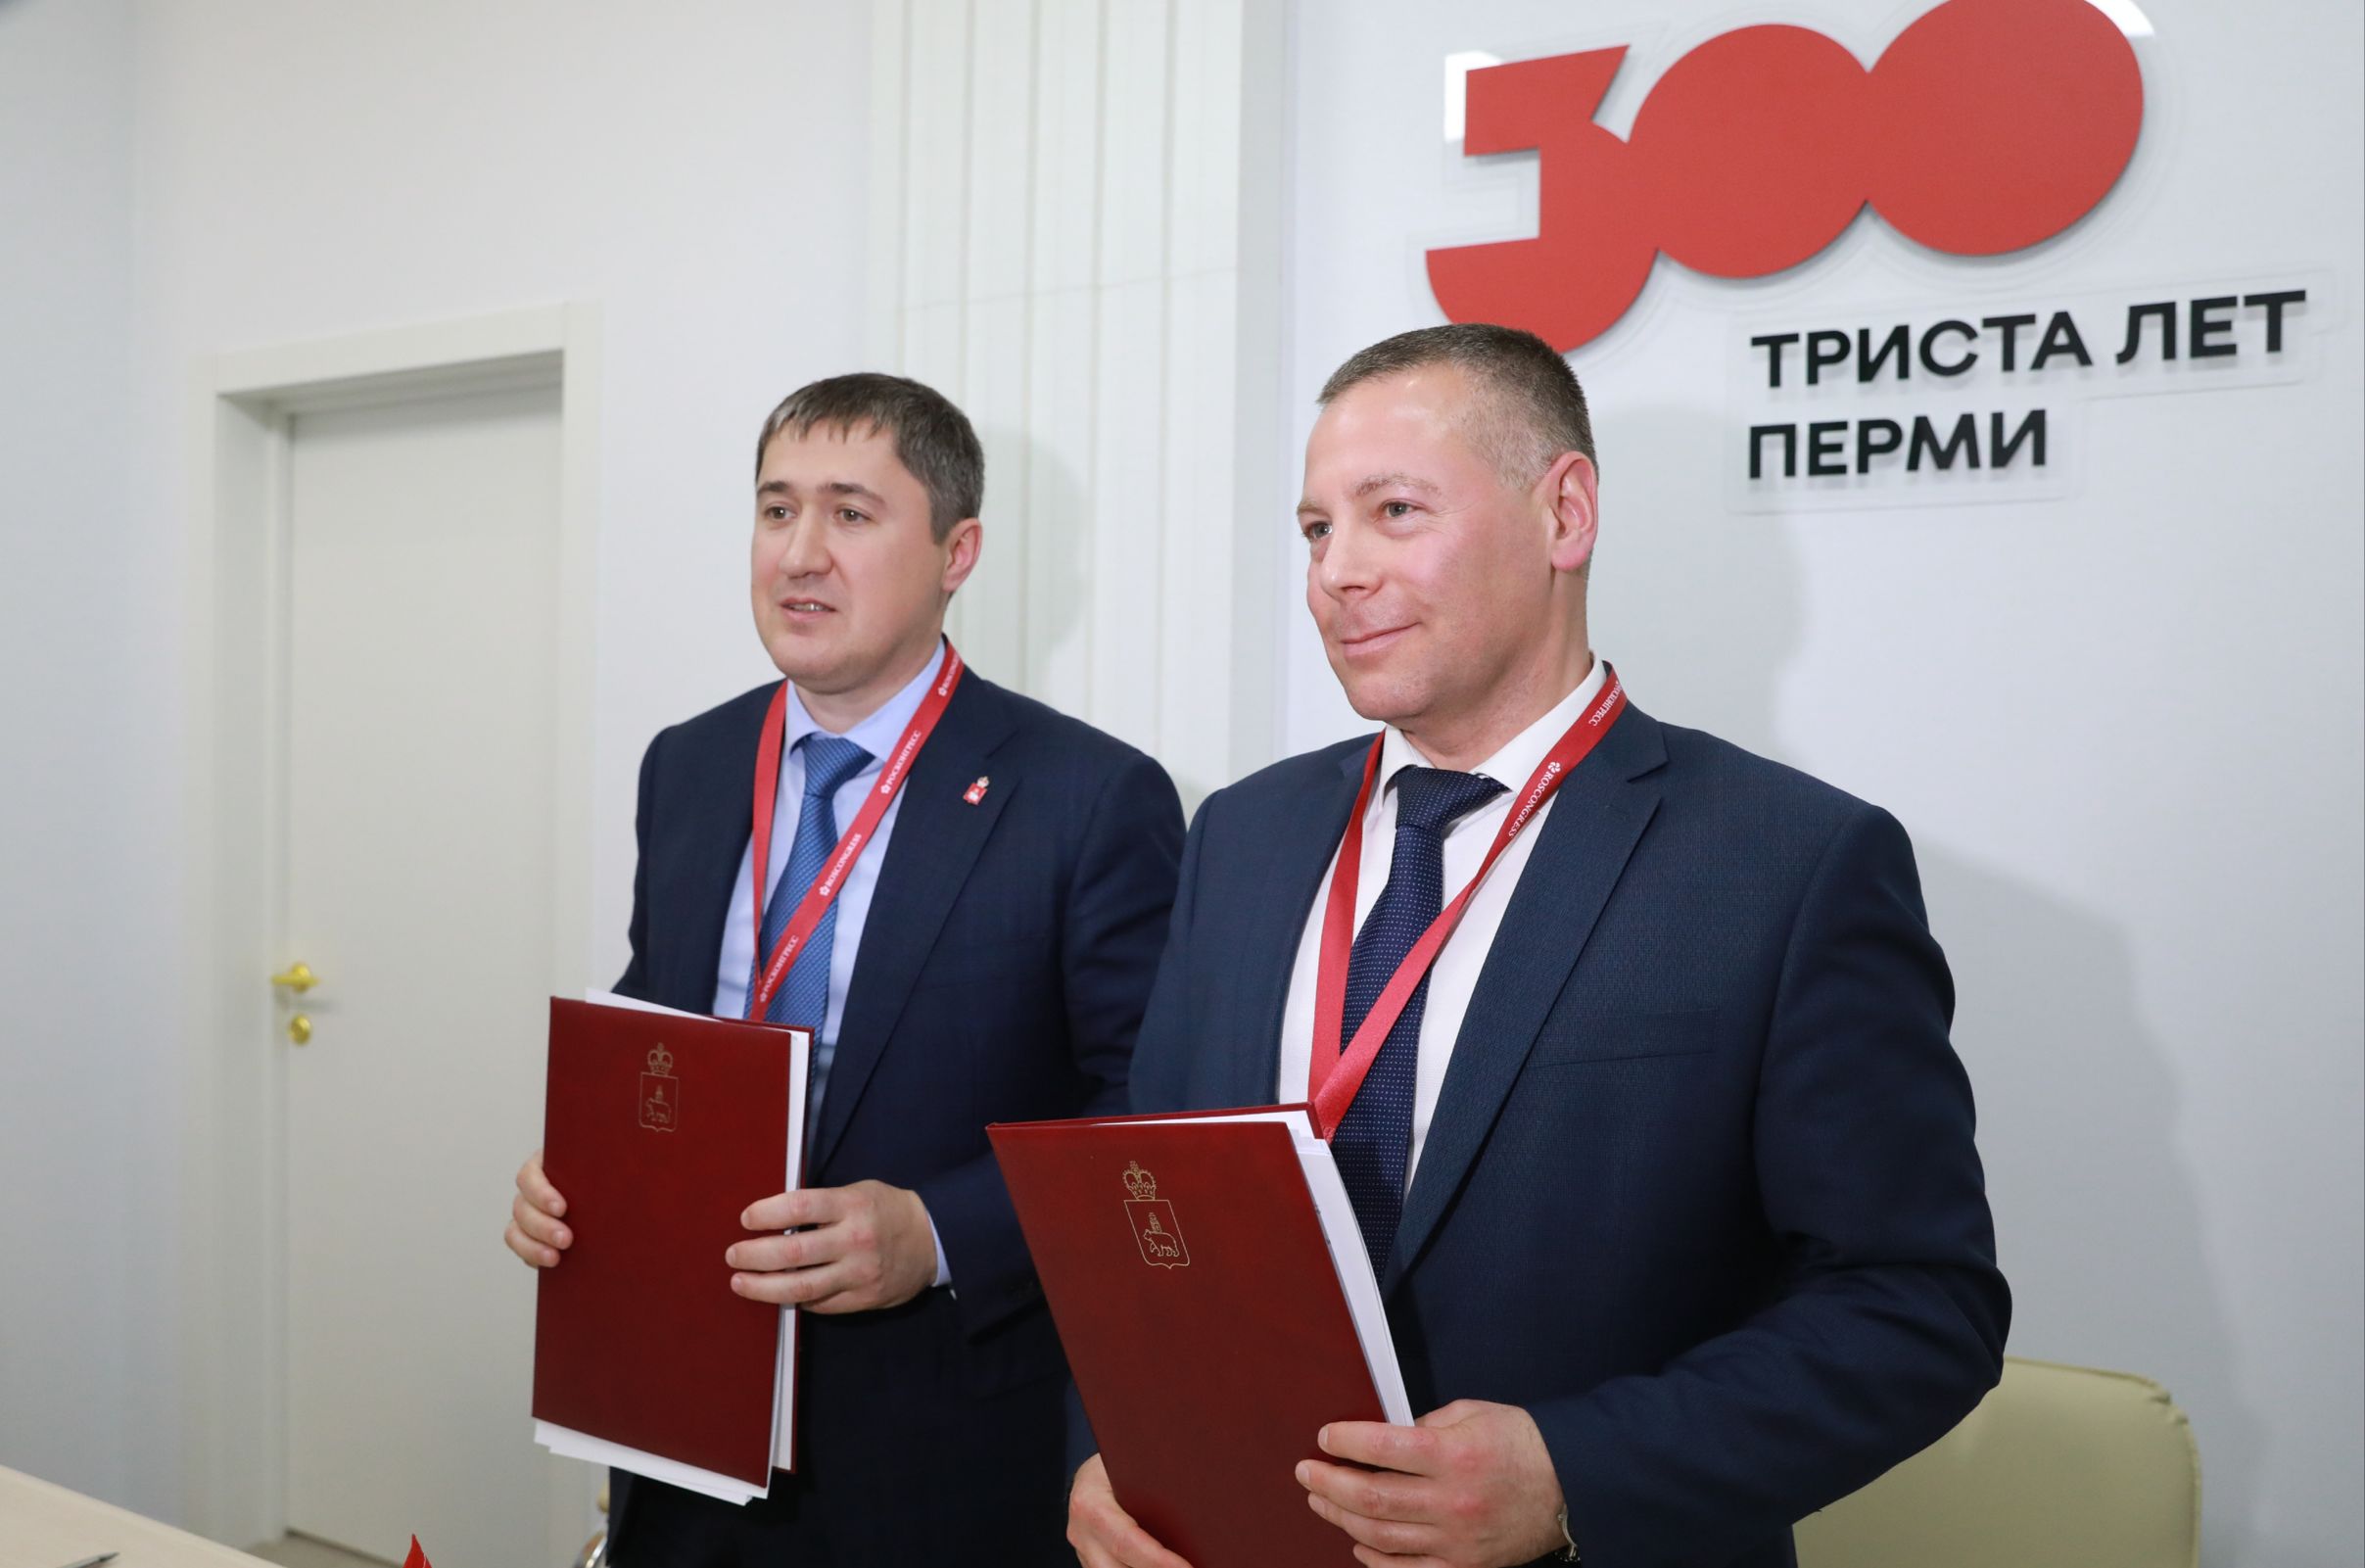 Михаил Евраев: на полях ПМЭФ-2022 заключили соглашение о сотрудничестве с Пермским краем